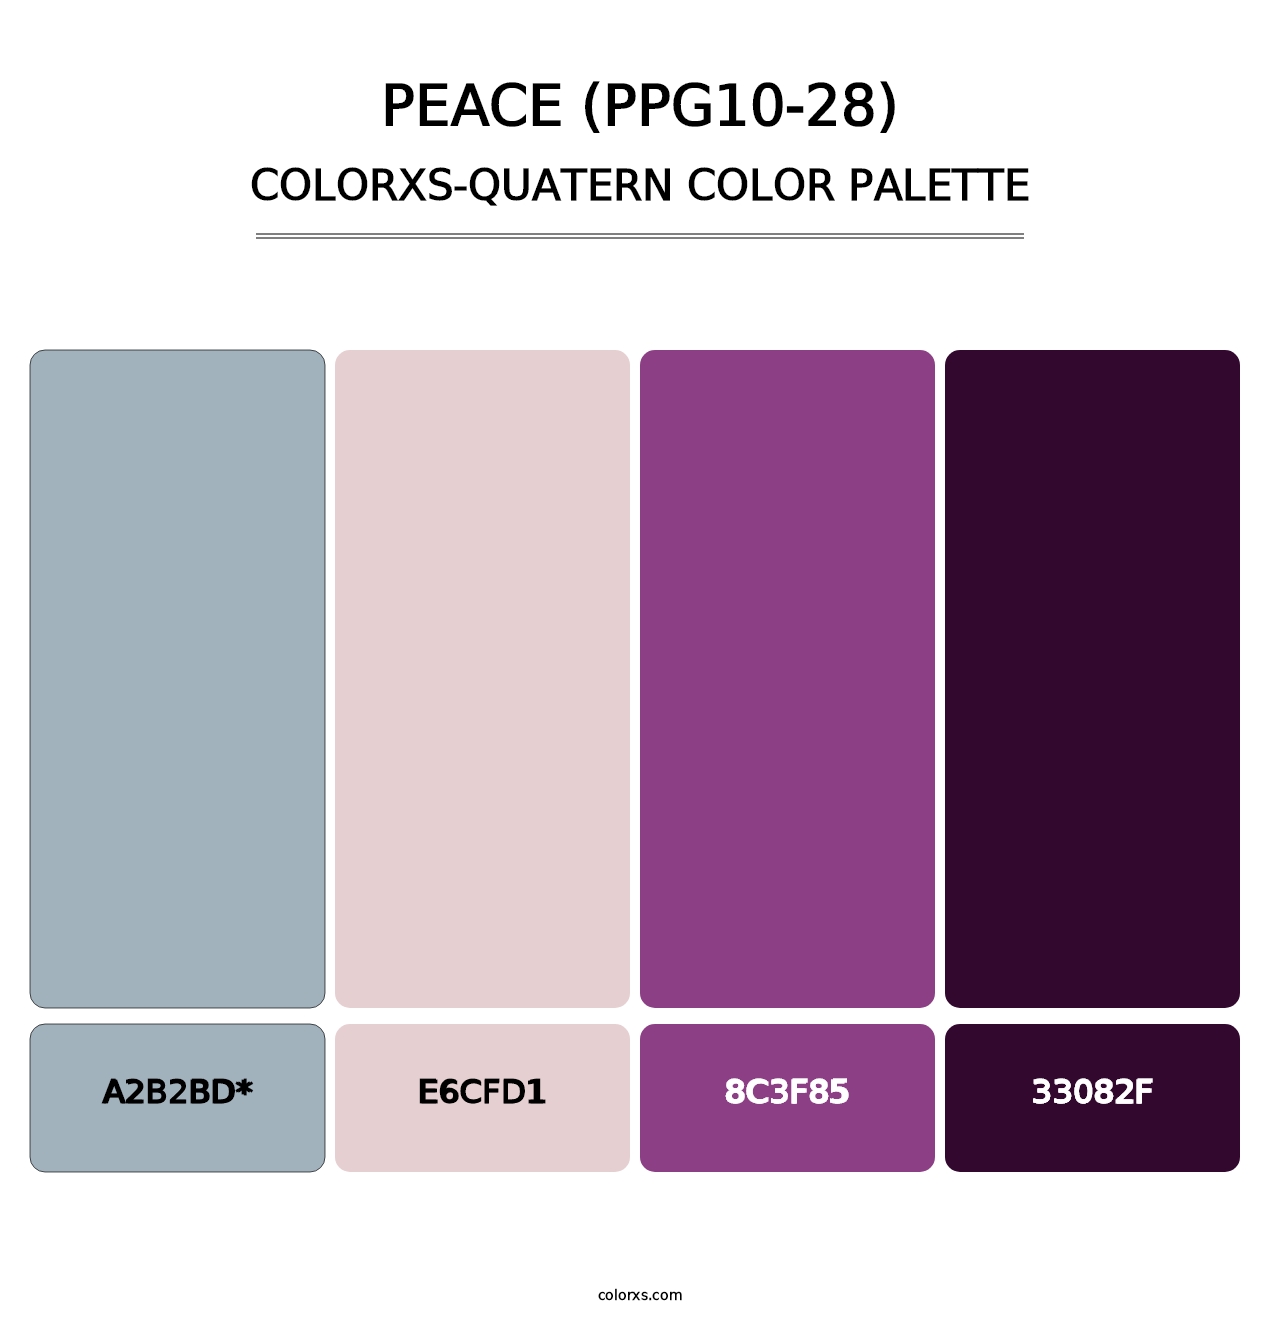 Peace (PPG10-28) - Colorxs Quatern Palette